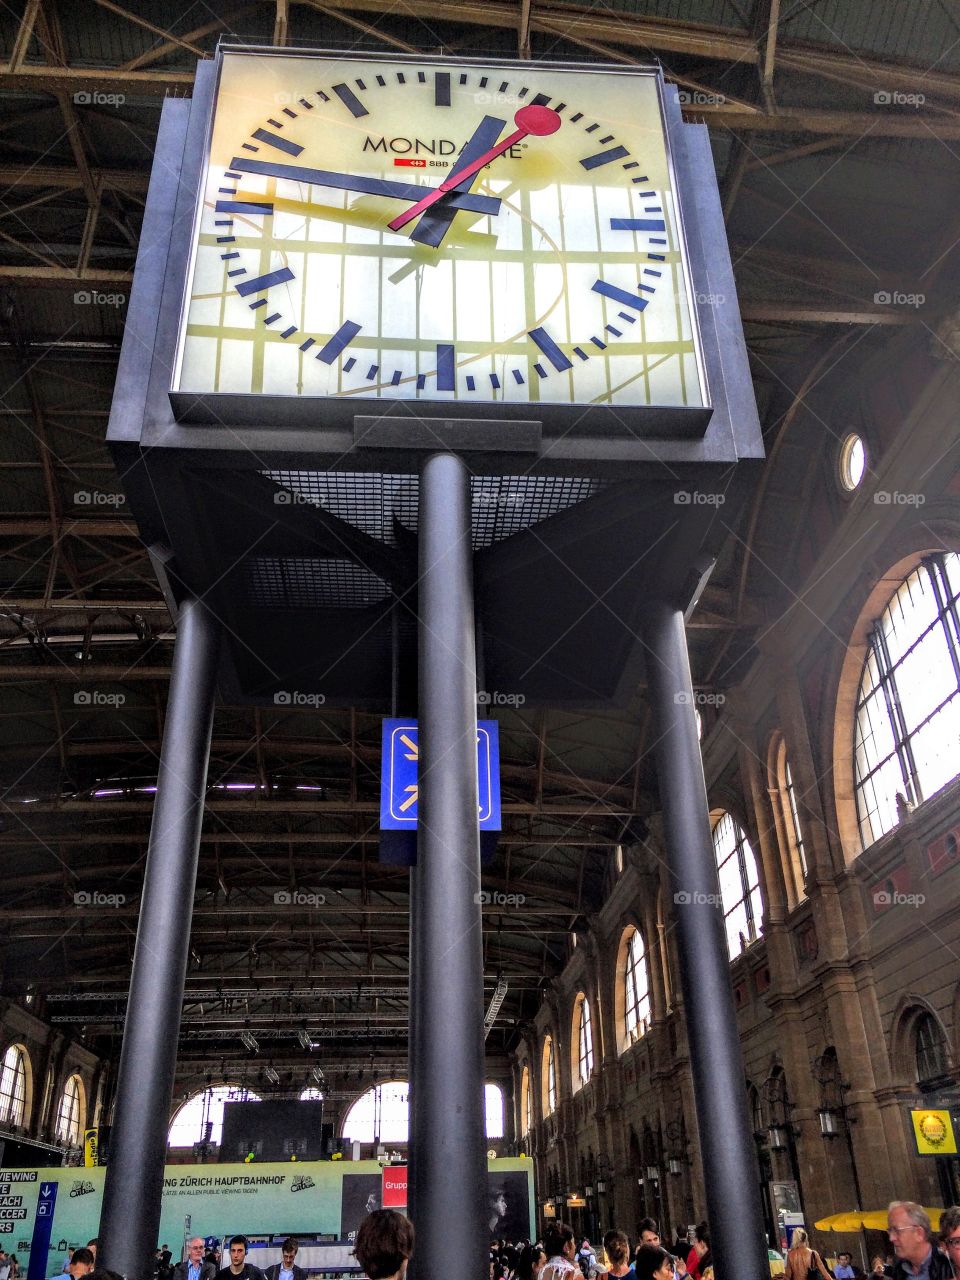 The Big Clock (meeting place) 
Zurich, Switzerland